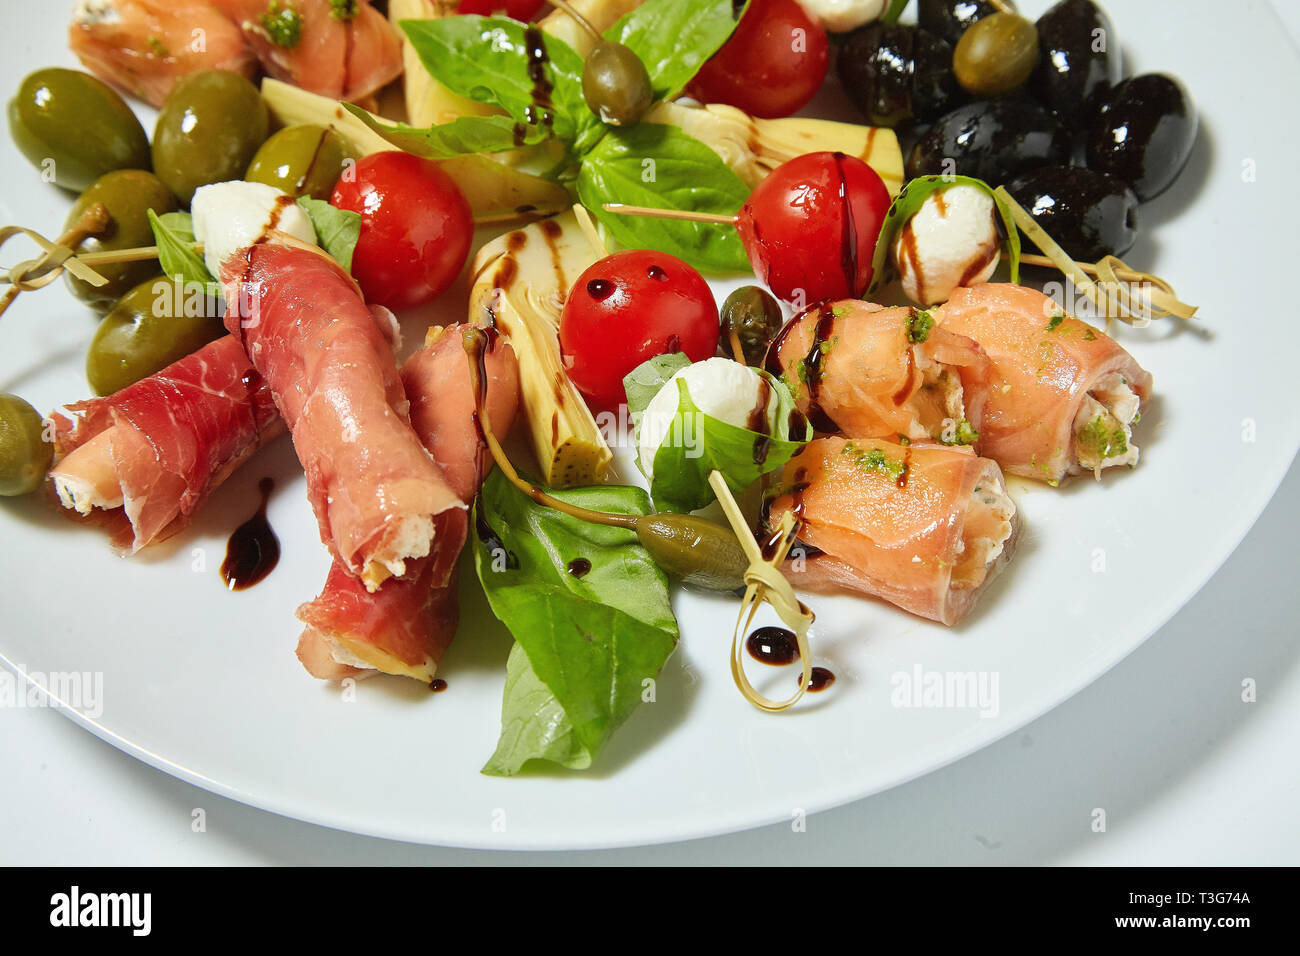 Salade de légumes aux olives, câpres, viande et petits pains. Isolé sur fond blanc. Banque D'Images